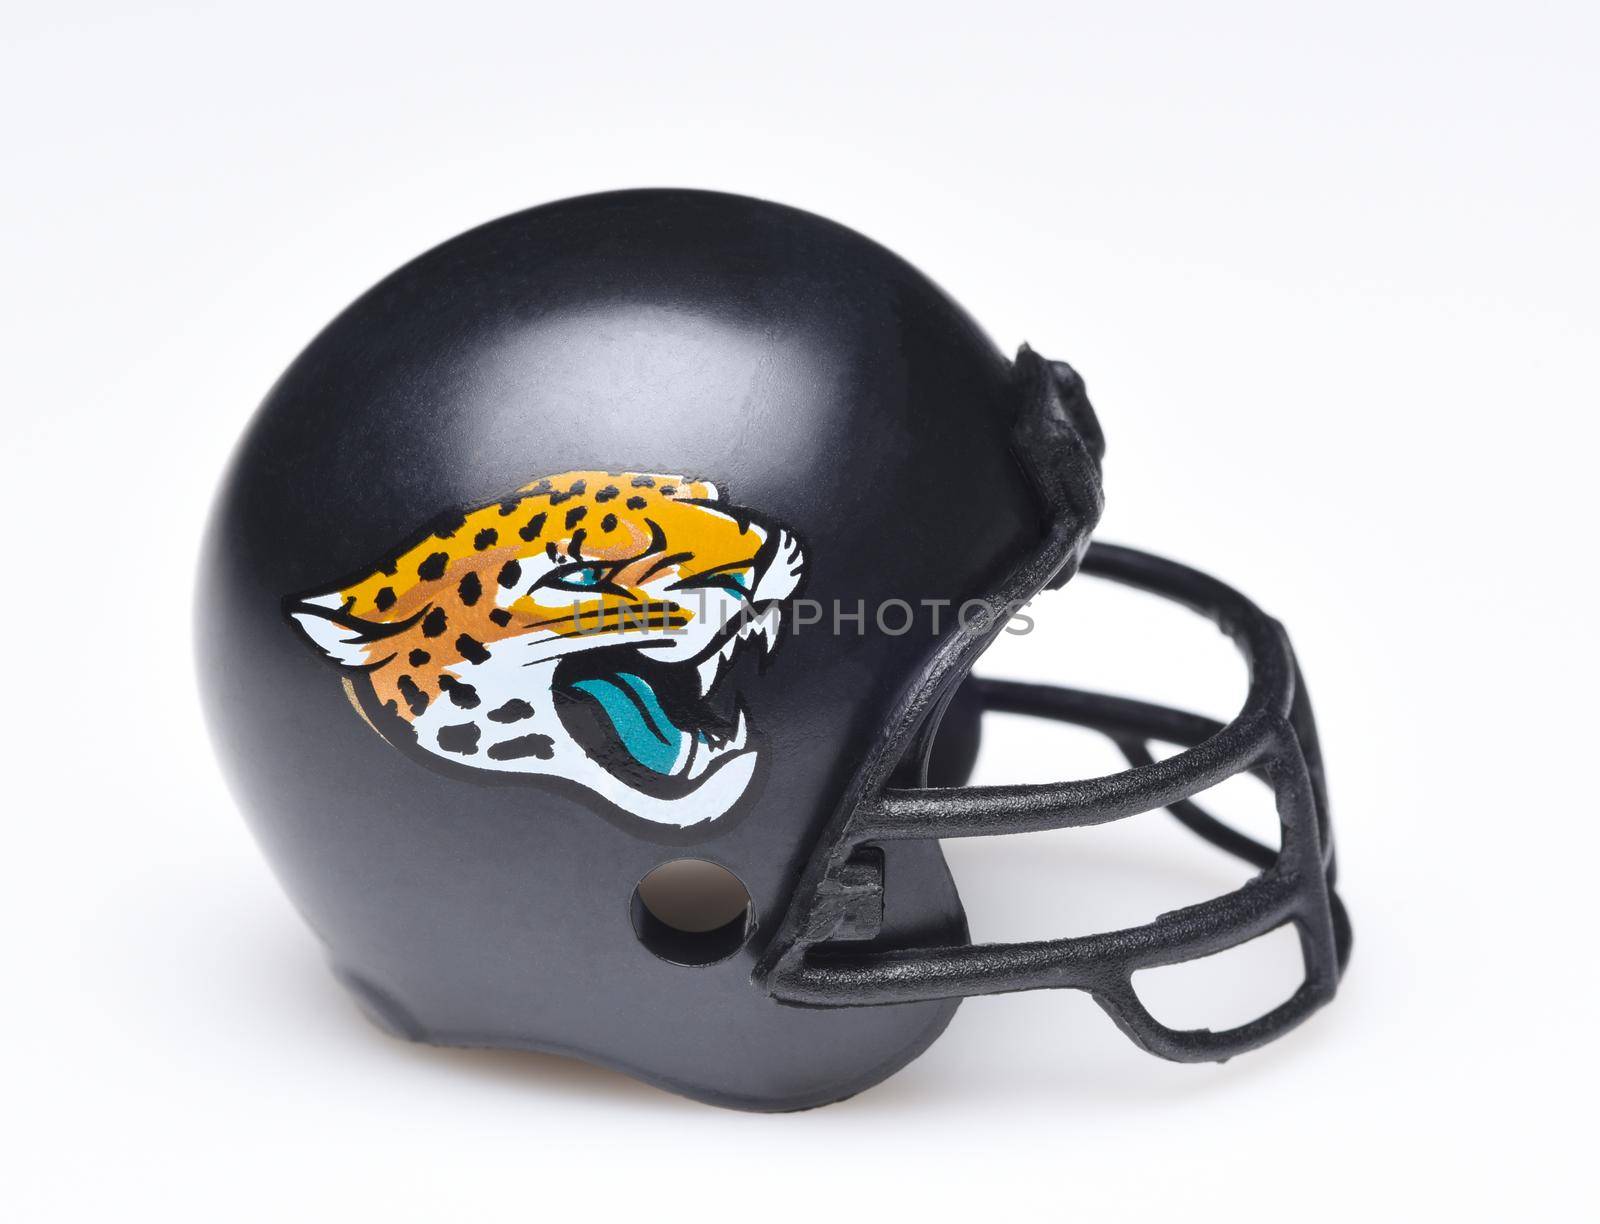 Helmet for the Jacksonville Jaguars by sCukrov